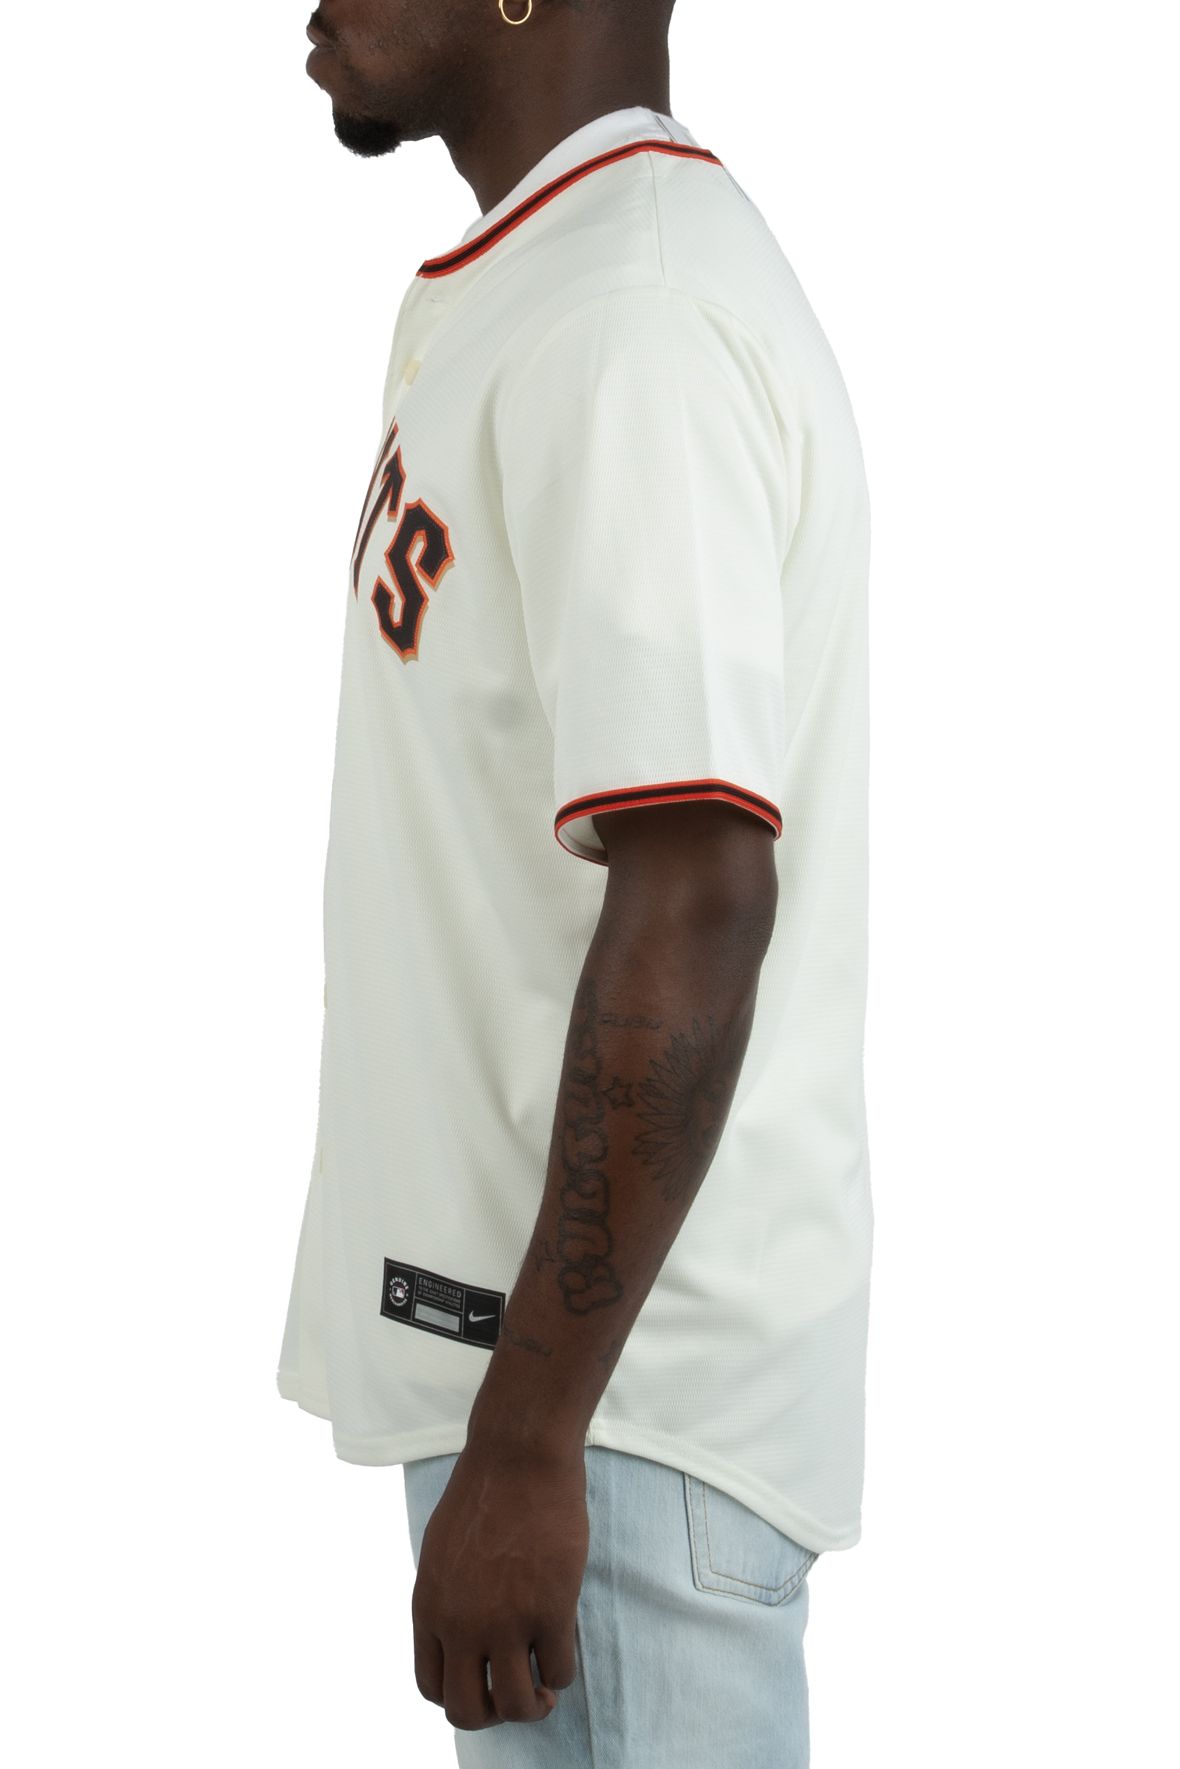 Supreme Denim Baseball Jersey 'White' | Men's Size 2XL